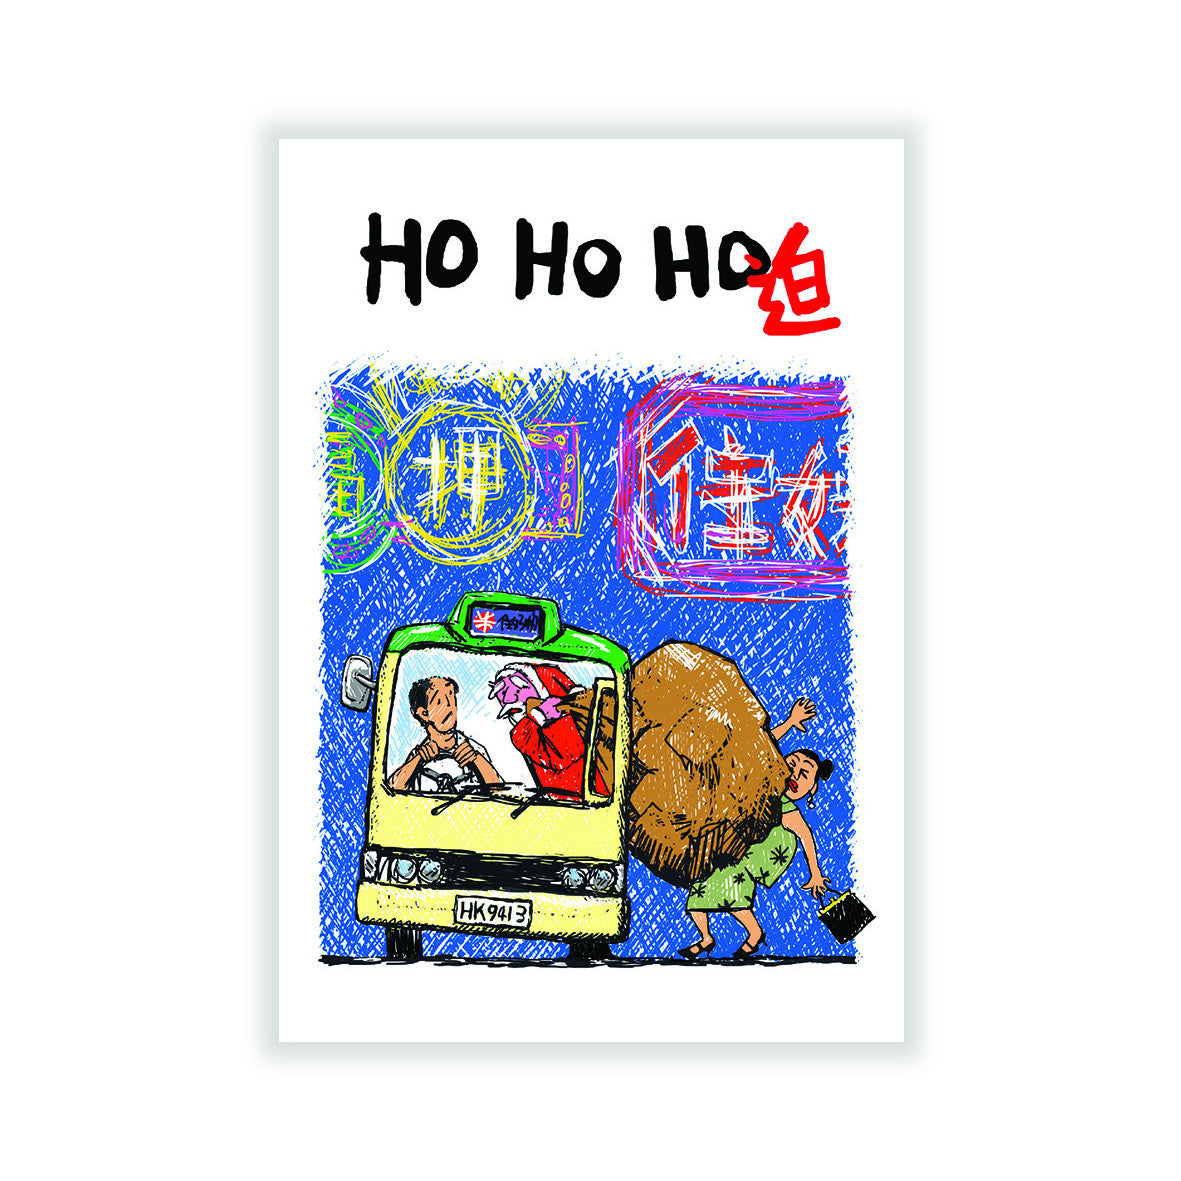 HO HO HO Christmas Card, Crowded